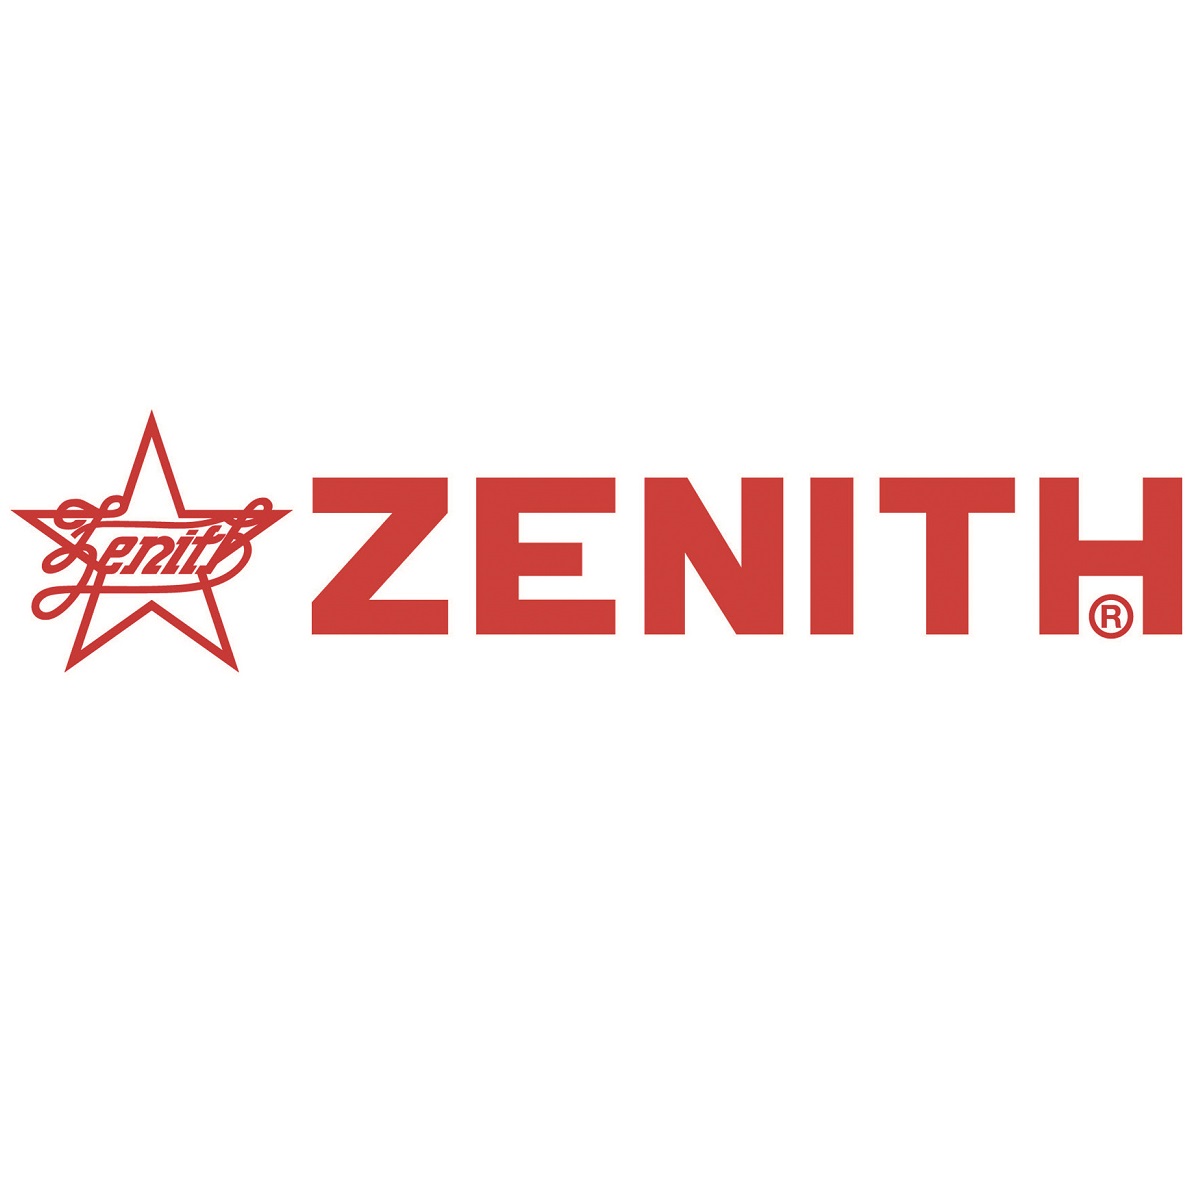 Zenith, 3000mm As Seen In The Block